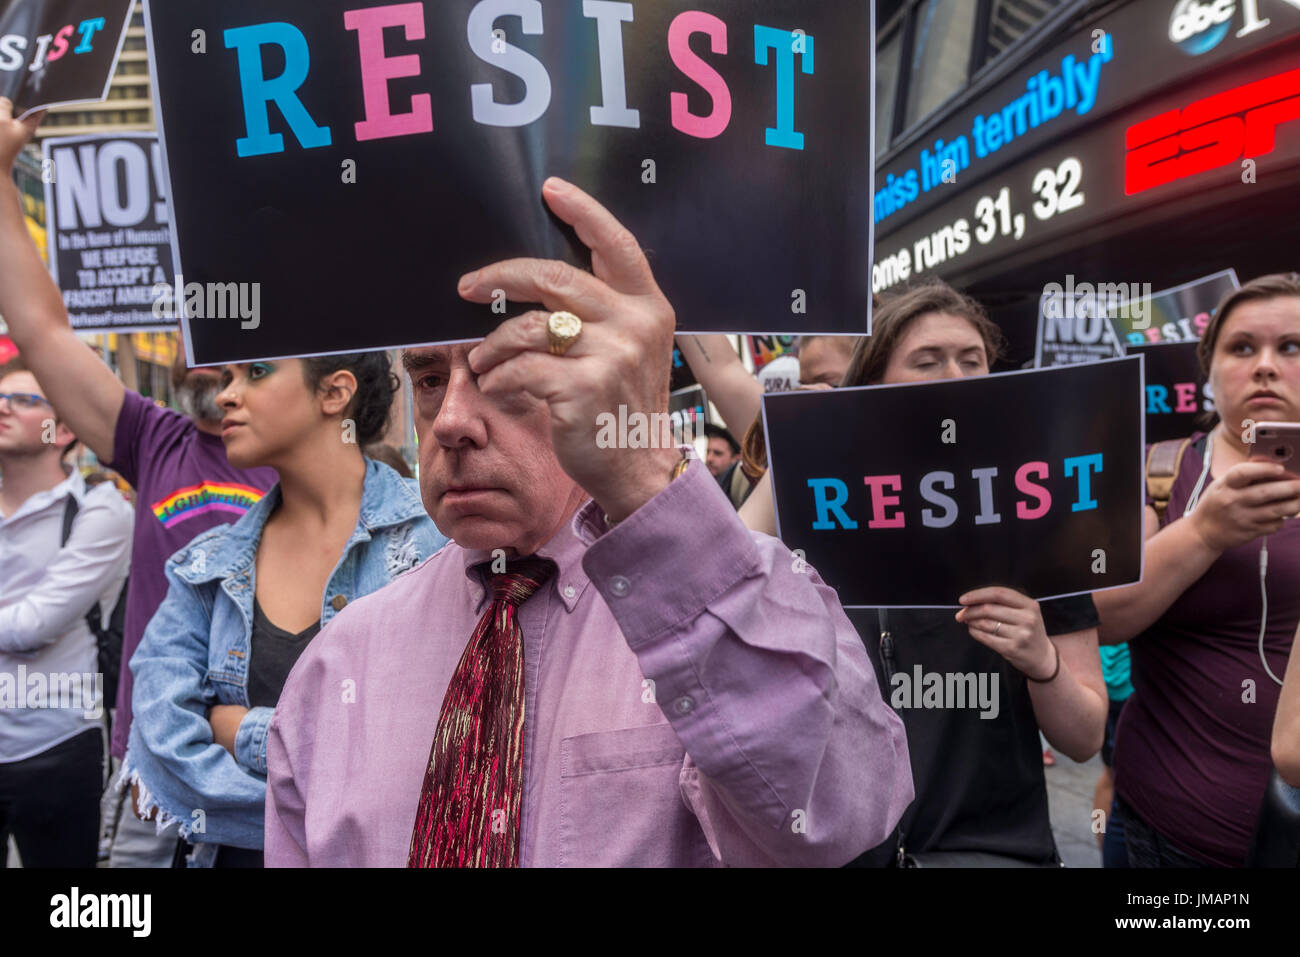 Nueva York, NY el 26 de julio de 2017 en respuesta al presidente Donald Trump tweet la prohibición a las personas transgénero de los militares, abogados, activistas y aliados se reunieron en el centro de reclutamiento militar en Times Square en la protesta. ©Stacy Walsh Rosenstock/Alamy Live News Foto de stock